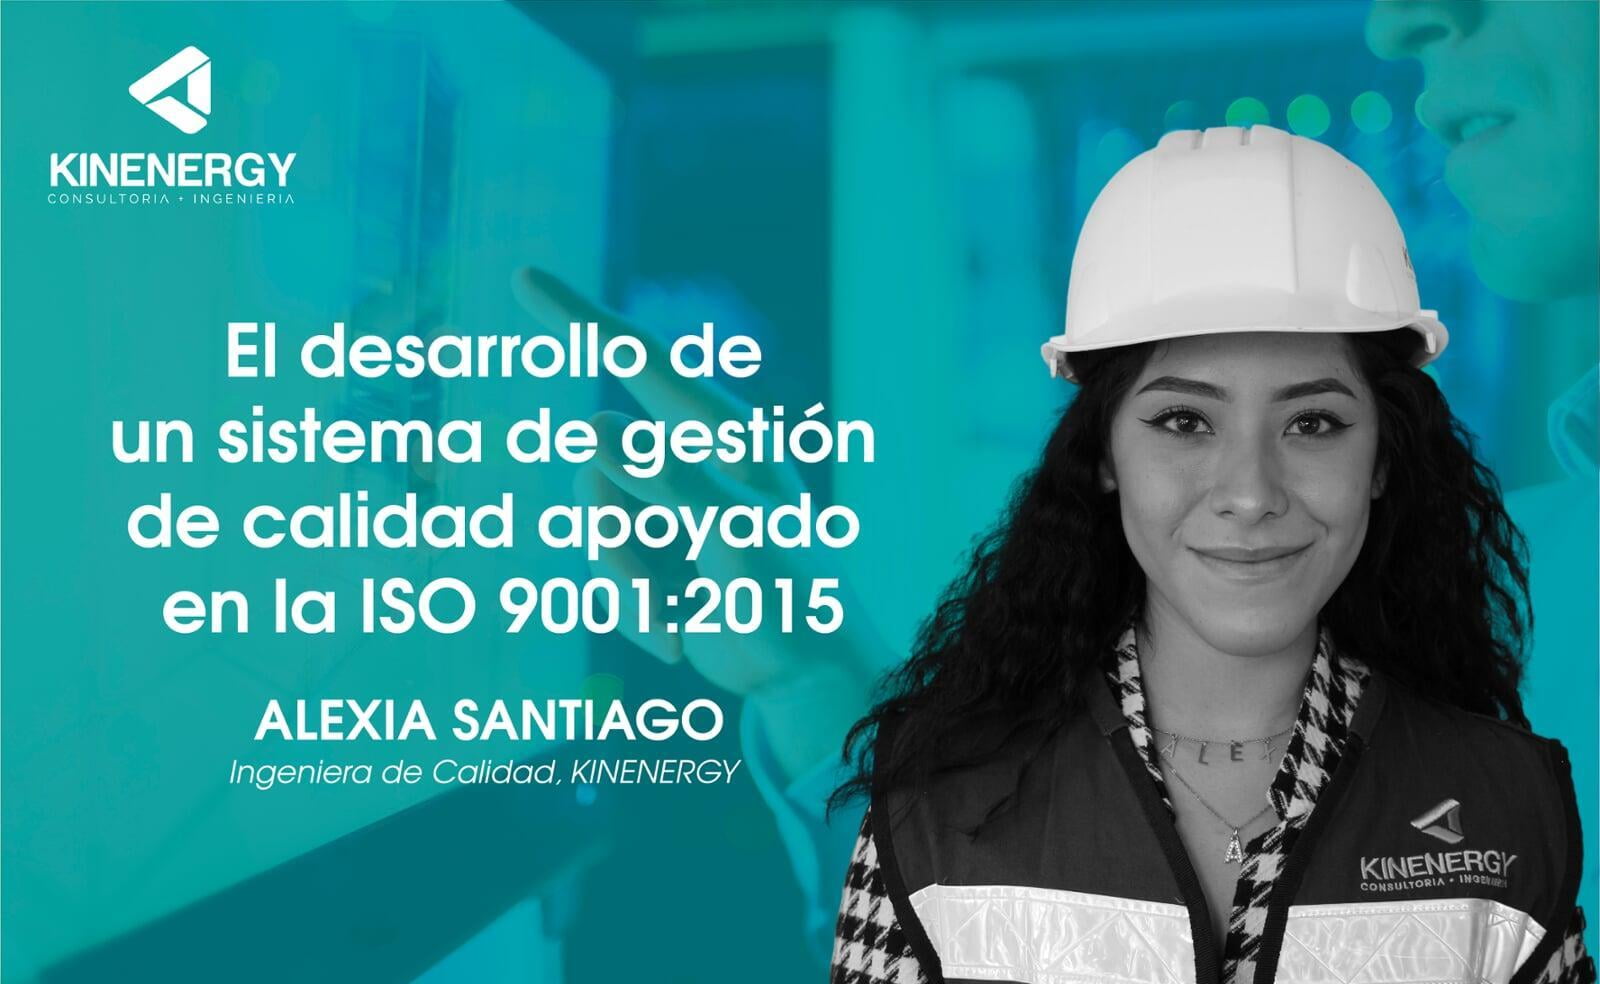 El desarrollo de un sistema de gestión de calidad apoyado en la ISO 9001:2015